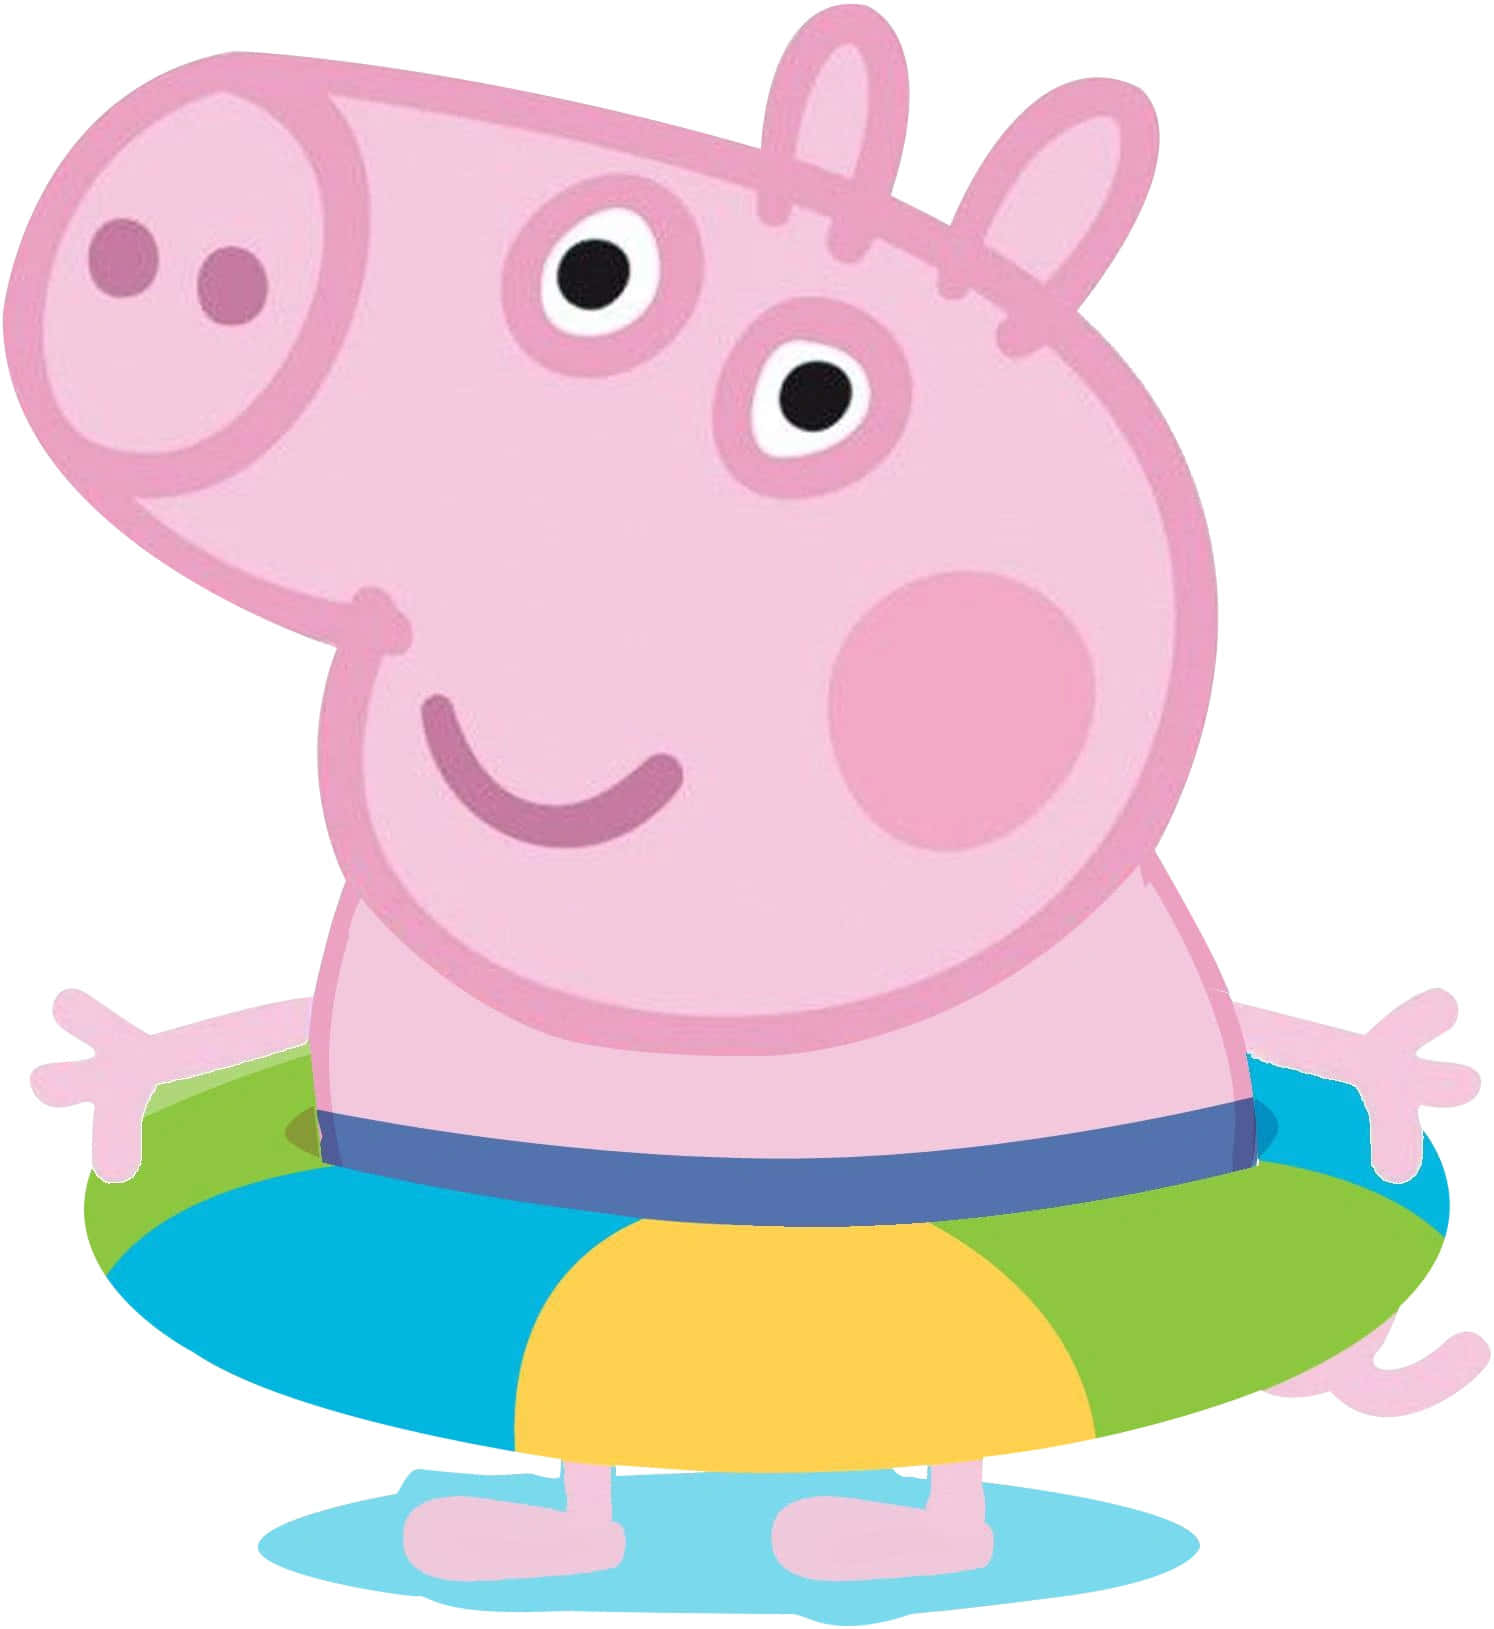 Georgepig, El Adorado Cerdito Rosa Del Popular Programa Peppa Pig Fondo de pantalla